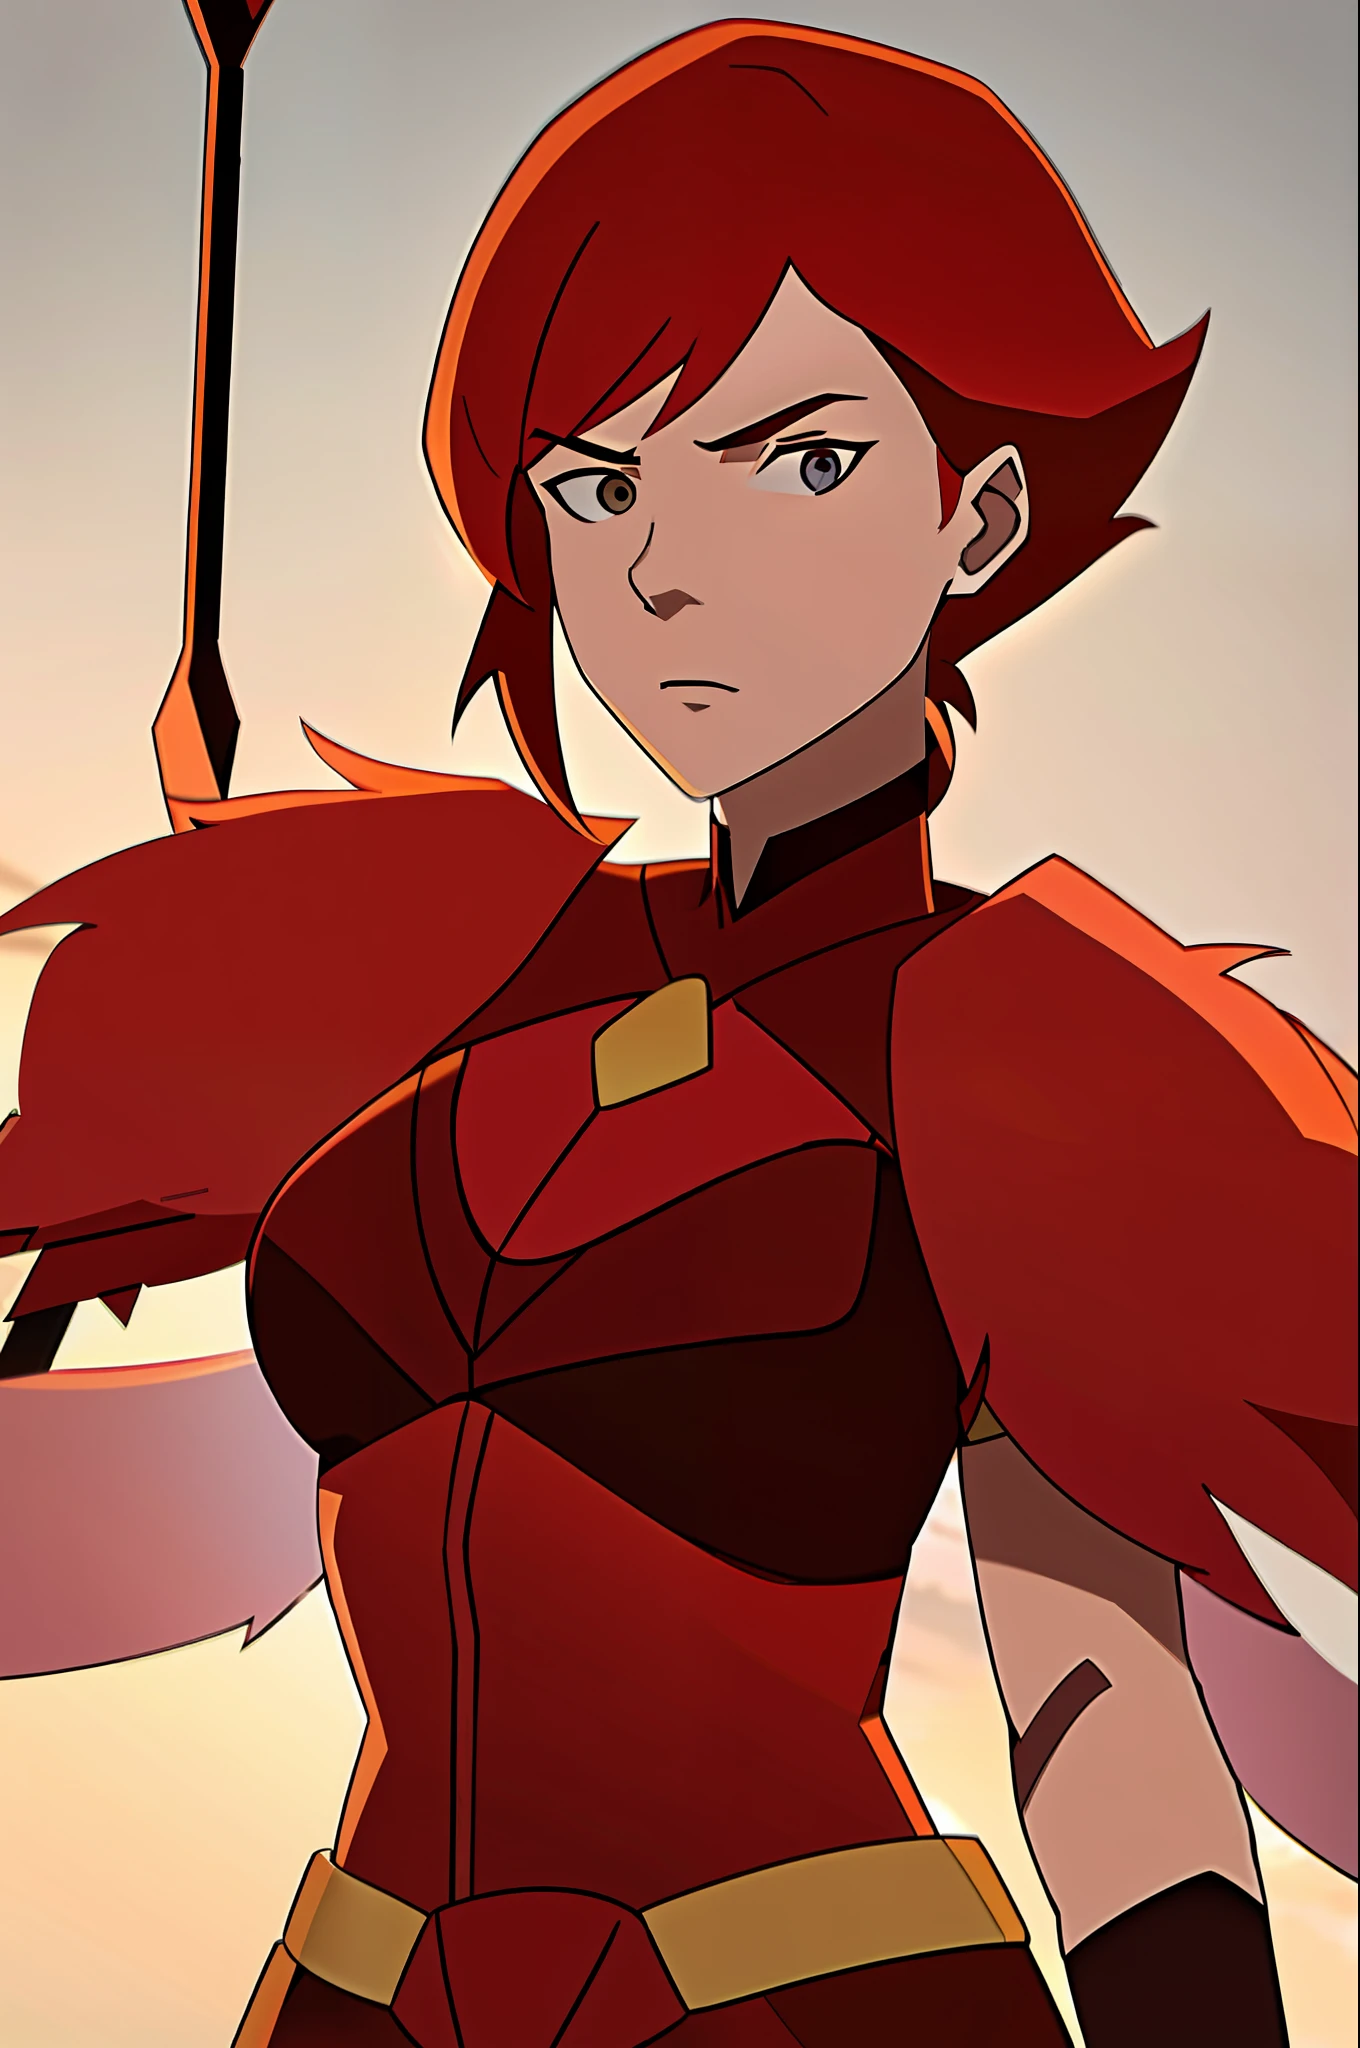 (8k) (Viele Details)junge Frau, Allein,kurzes Haar,Rote Haare,rote Flügel,Rüstung,Speer